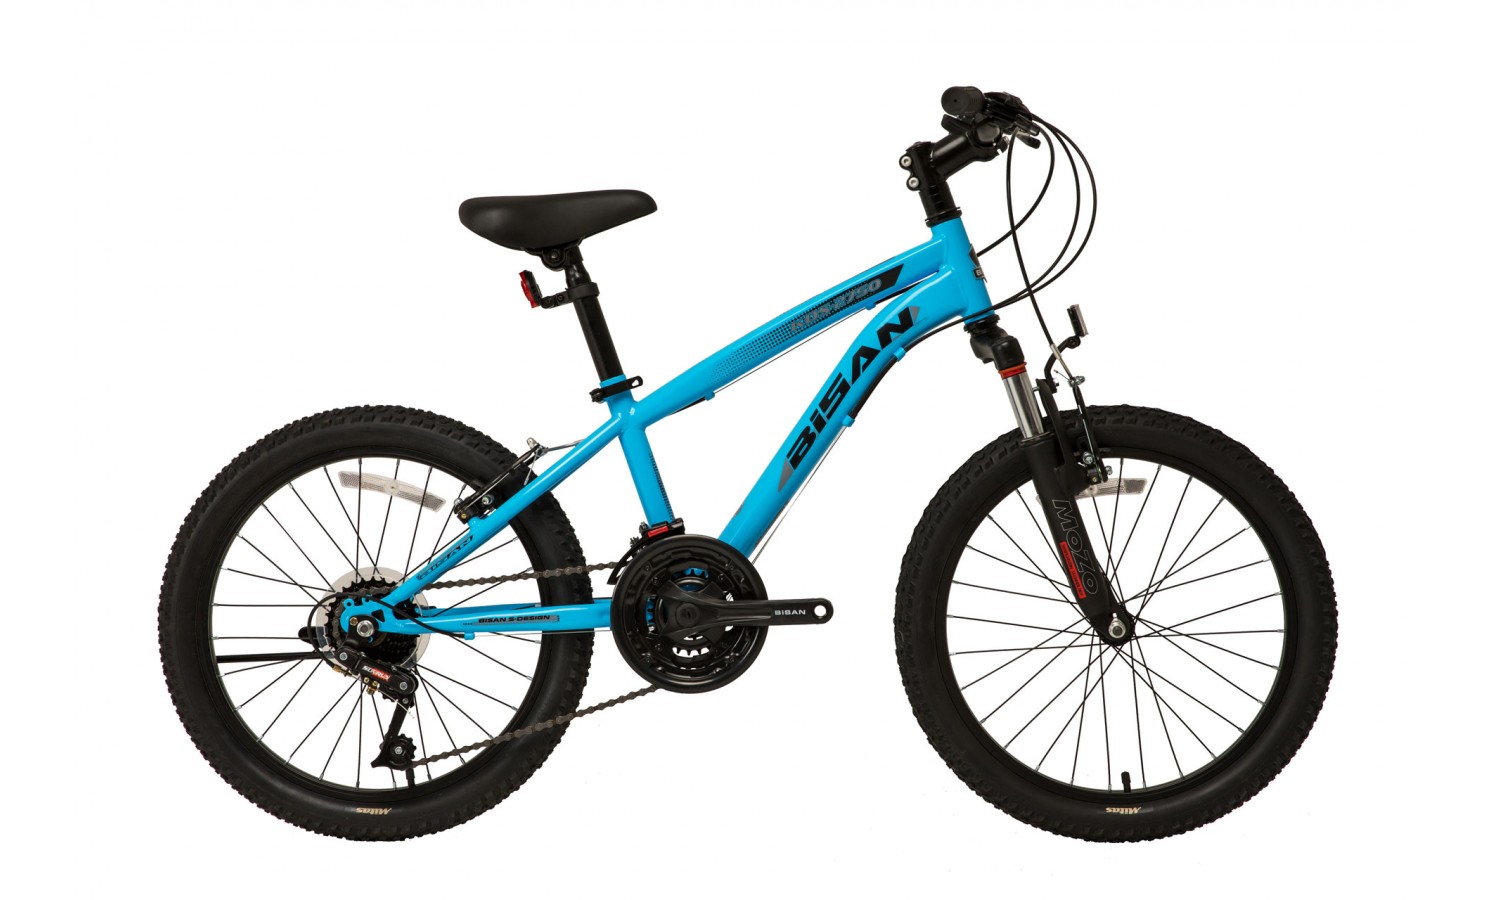 Bisan Kds 2750 20 V Çocuk Bisikleti (Mavi Siyah)